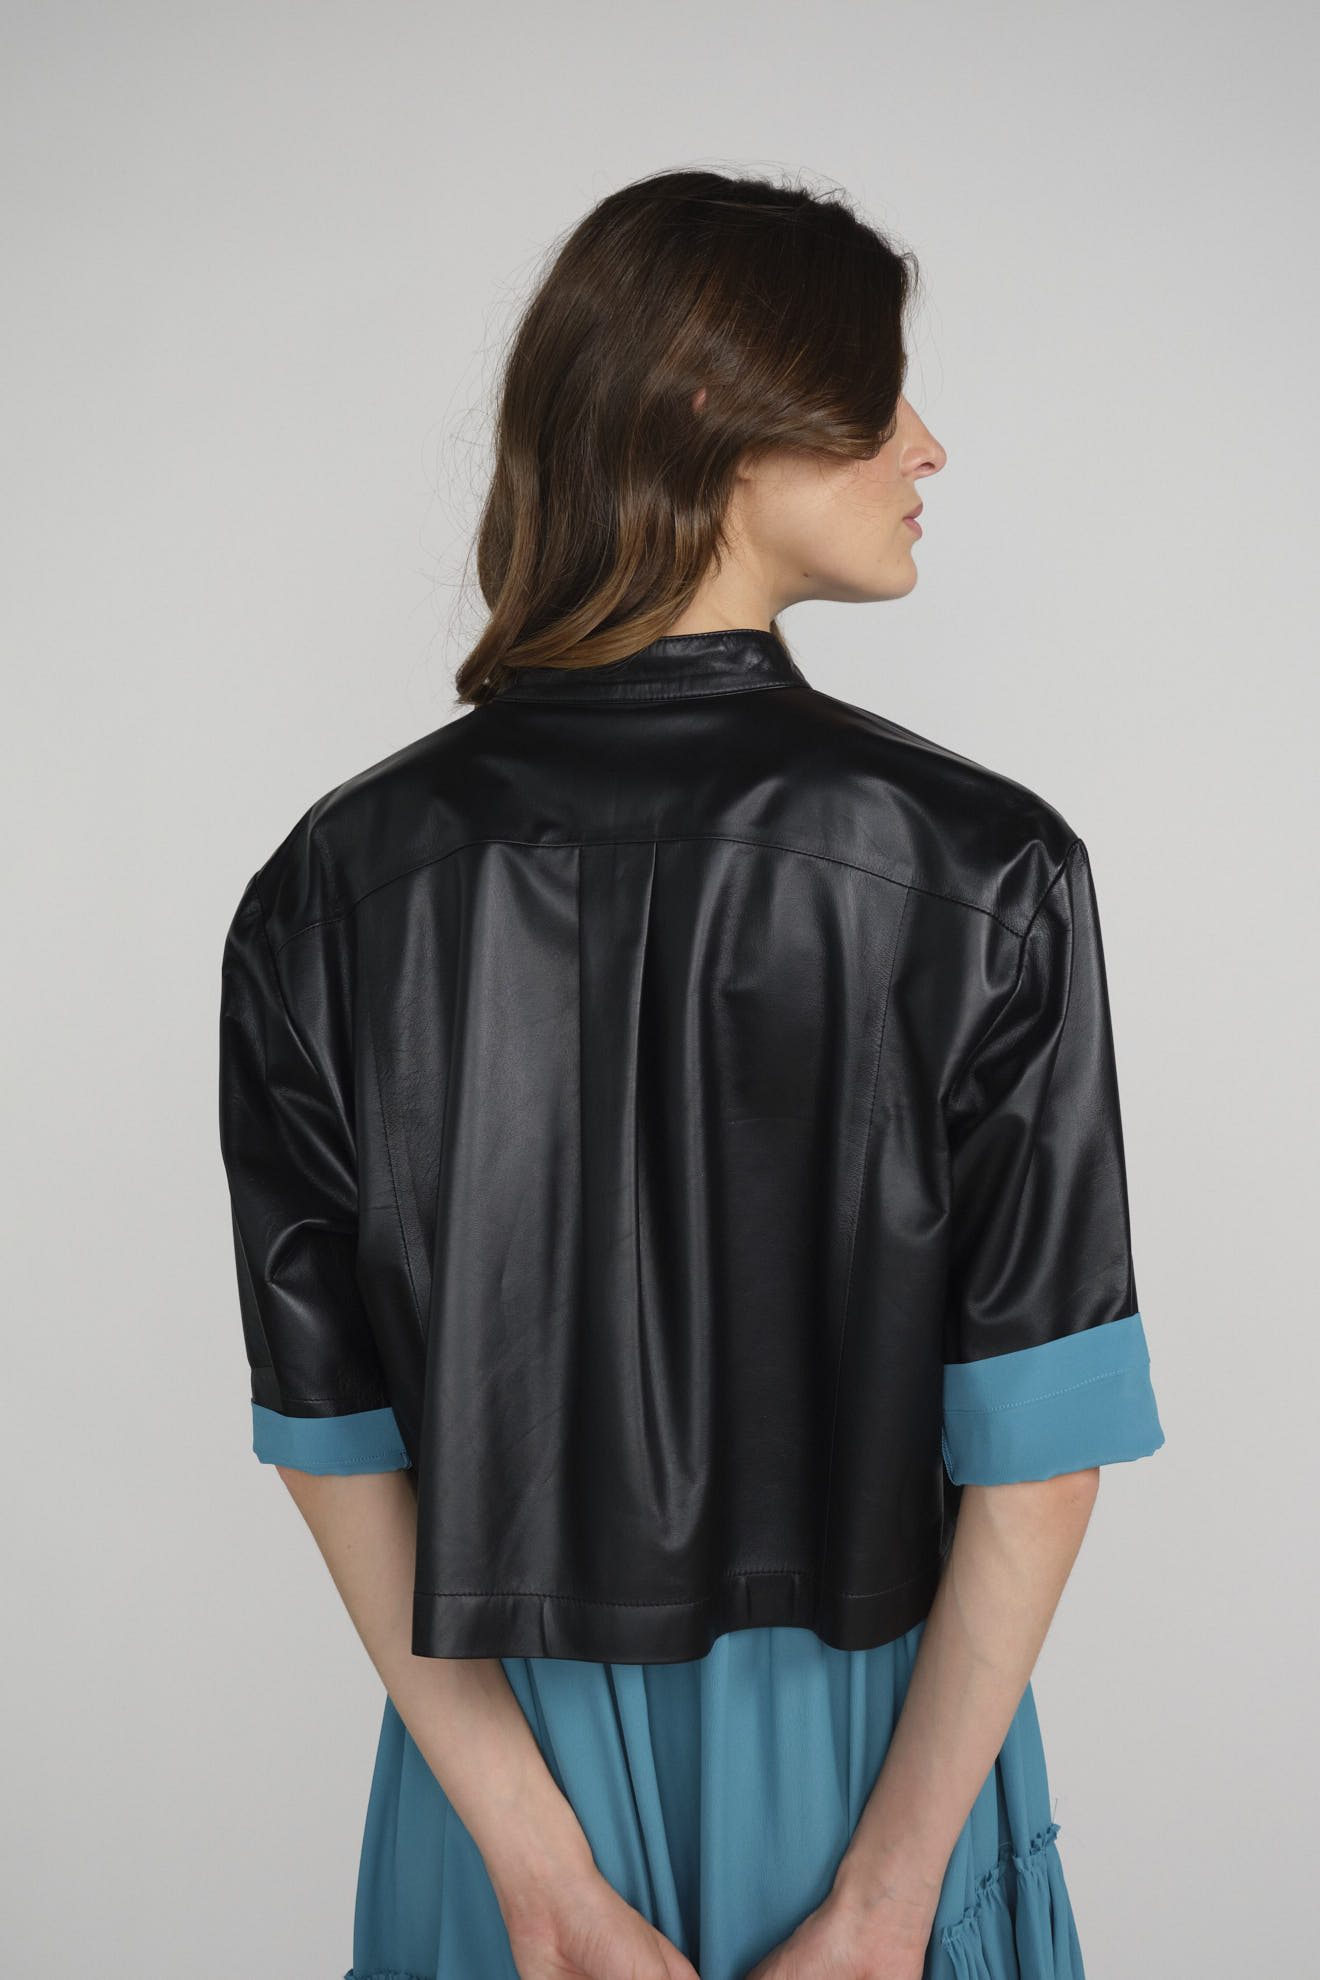 jay daze jacket black plain leather